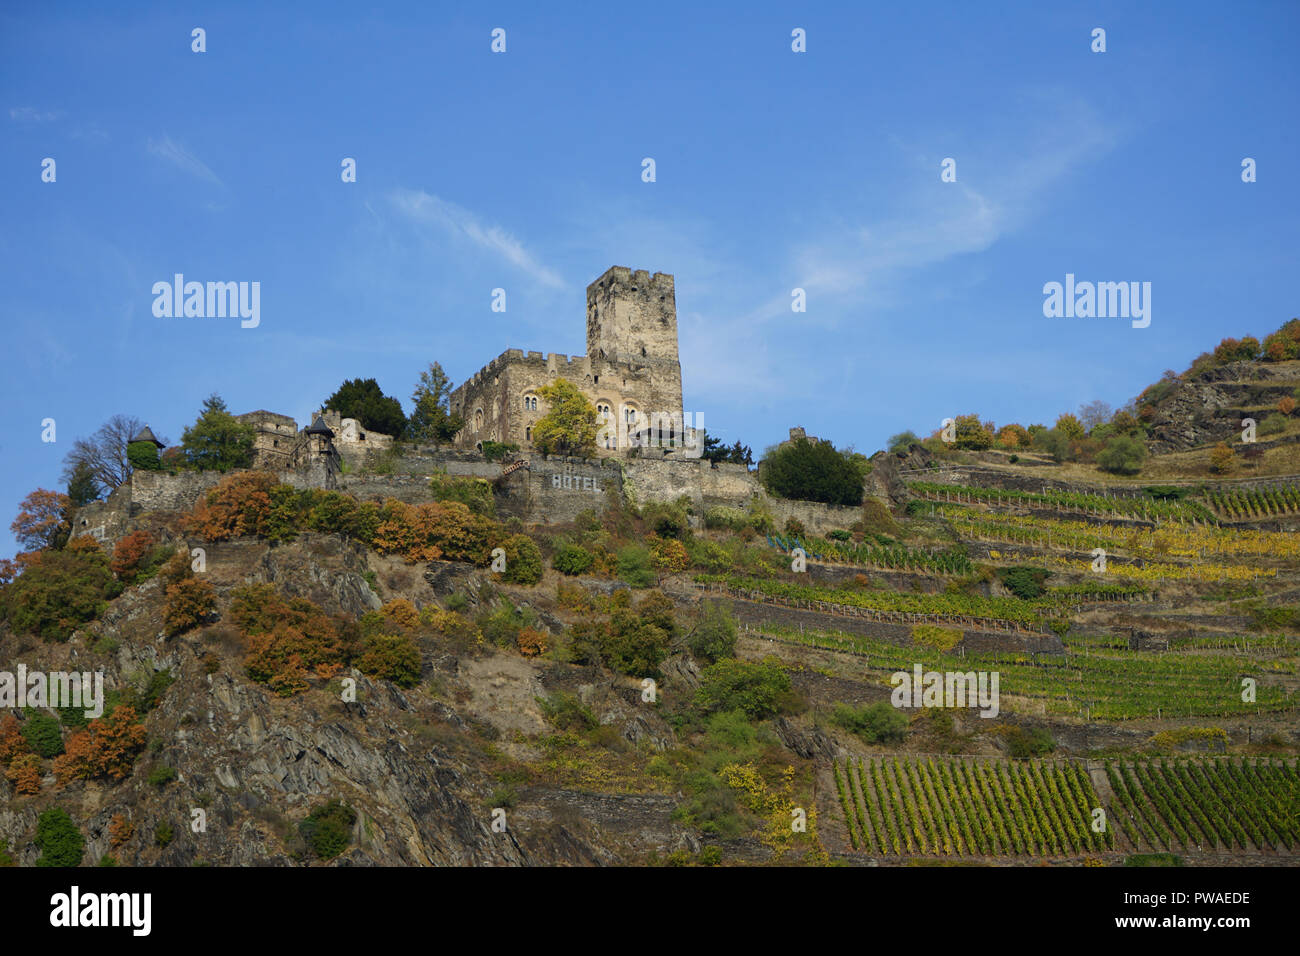 Burg Gutenfels, Kaub, Welterbe Kulturlandschaft Oberes Mittelrheintal, Rhein, Deutschland, Europa Foto Stock